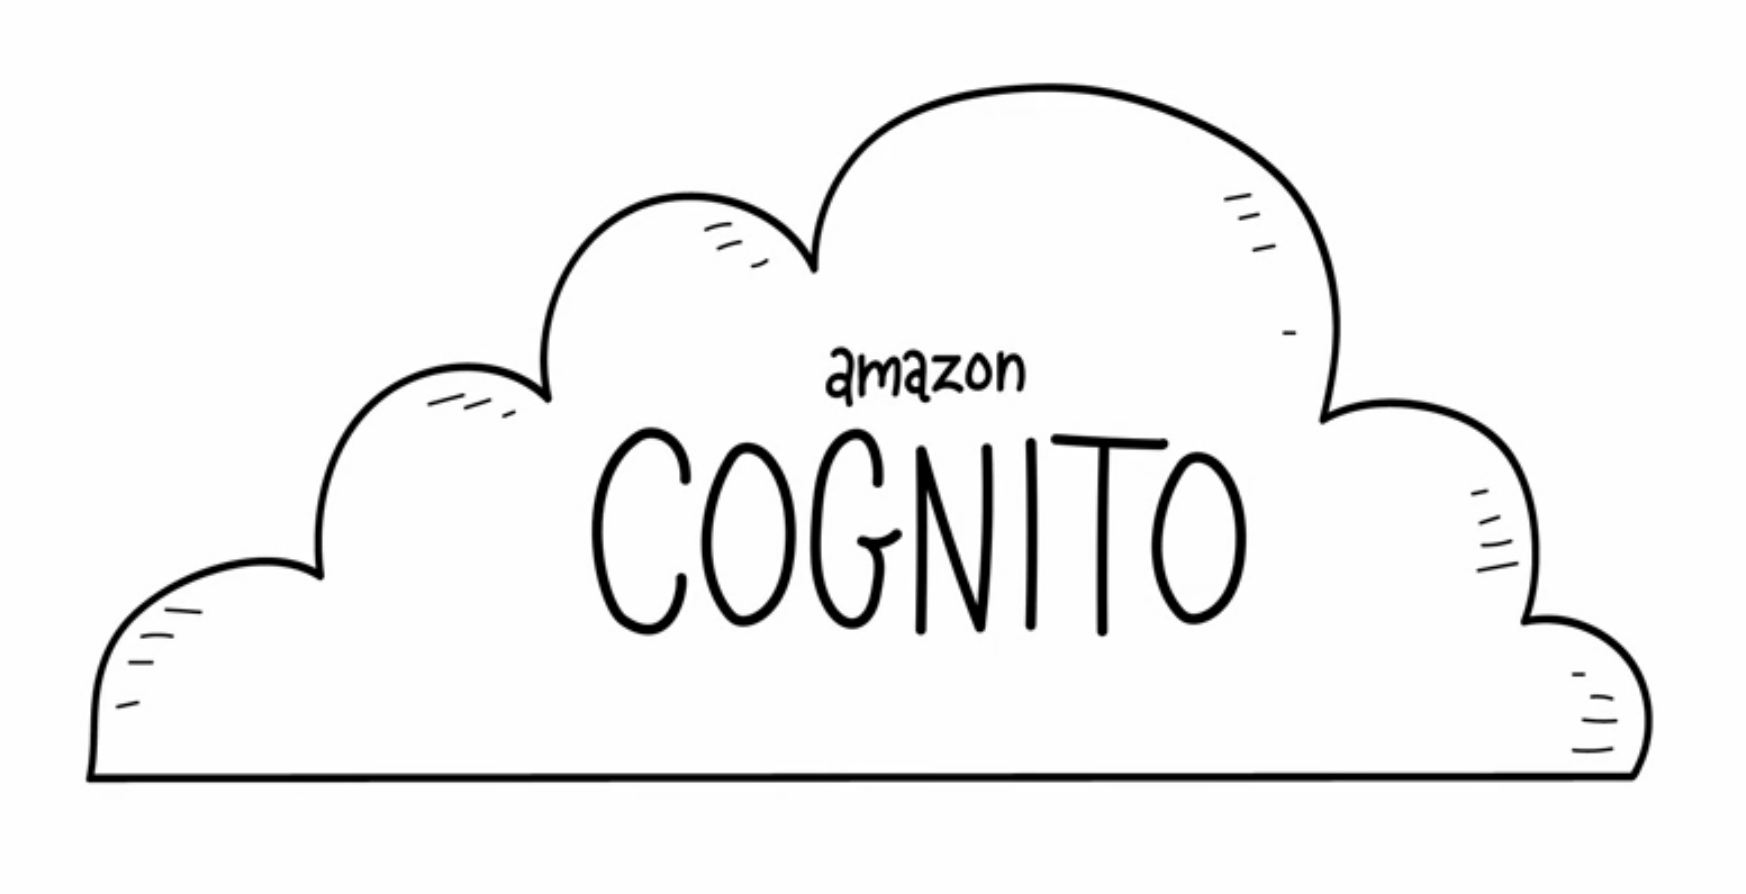 Amazon Cognito